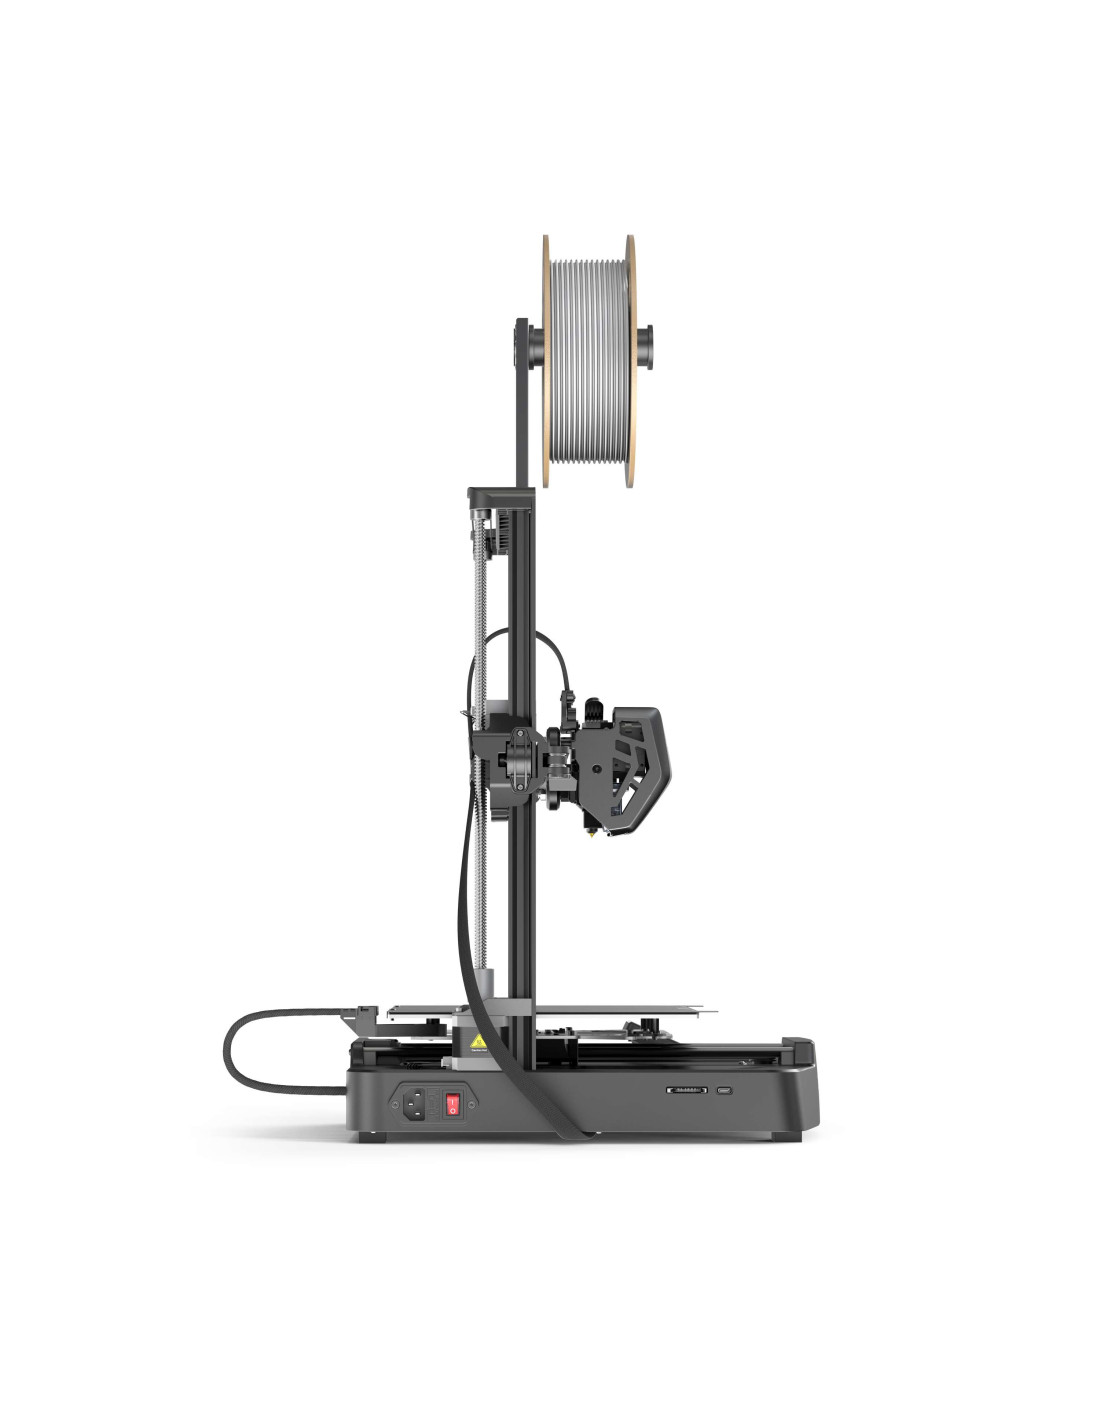 Creality Ender-3 V3 SE 3D-printer